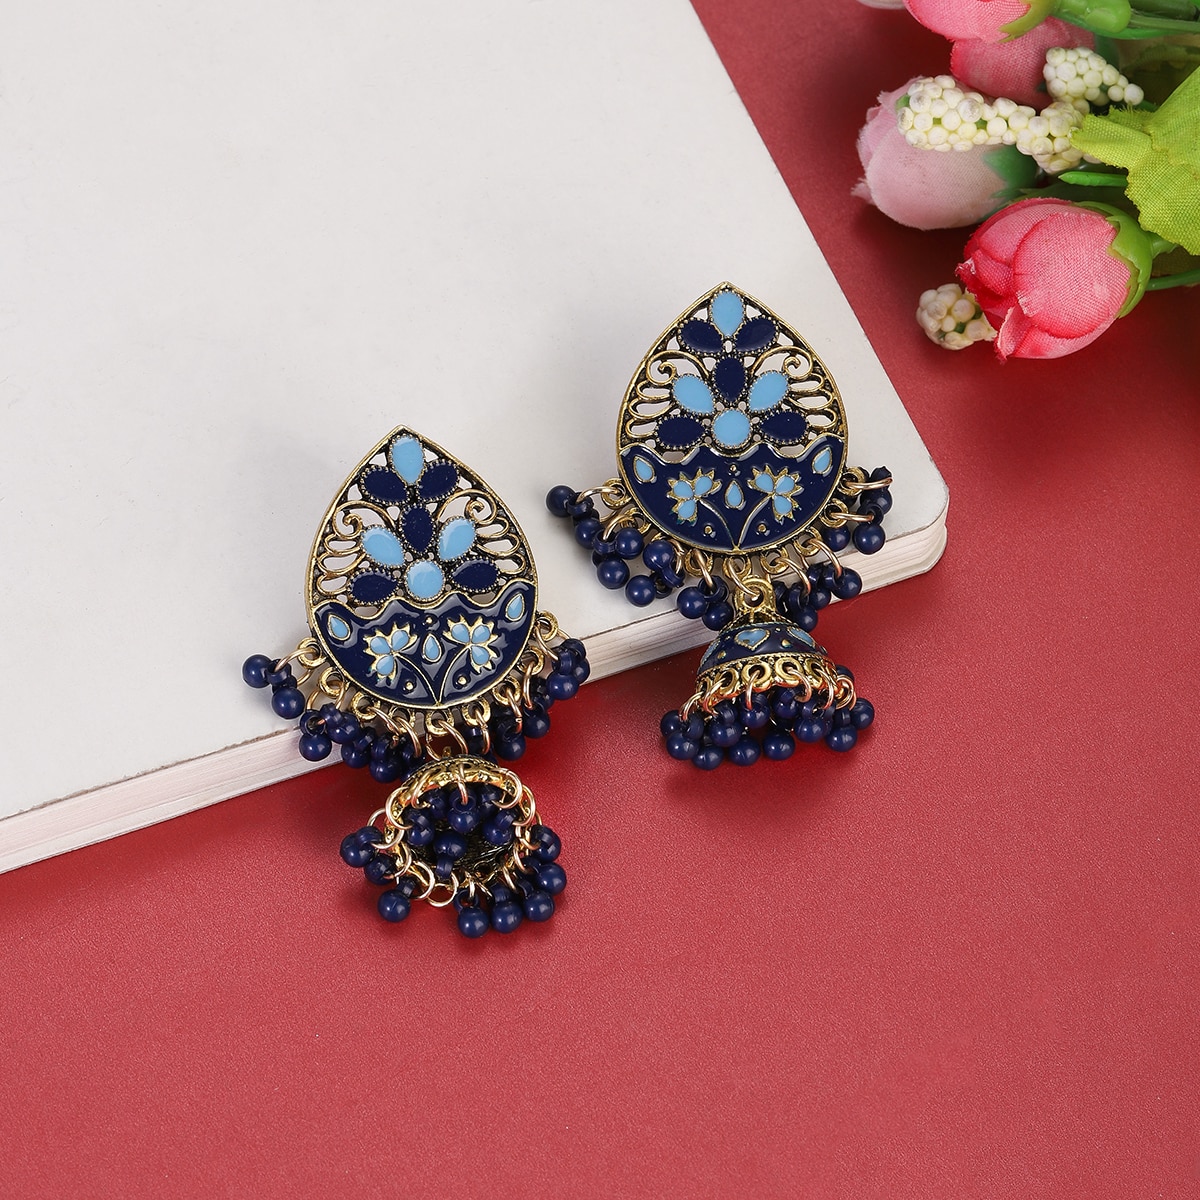 Vintage-Fashion-Water-Drop-Dangle-Earrings-for-Women-Ethnic-Indian-Jewelry-Blue-Flower-Tassel-Dangli-3256804947025776-9